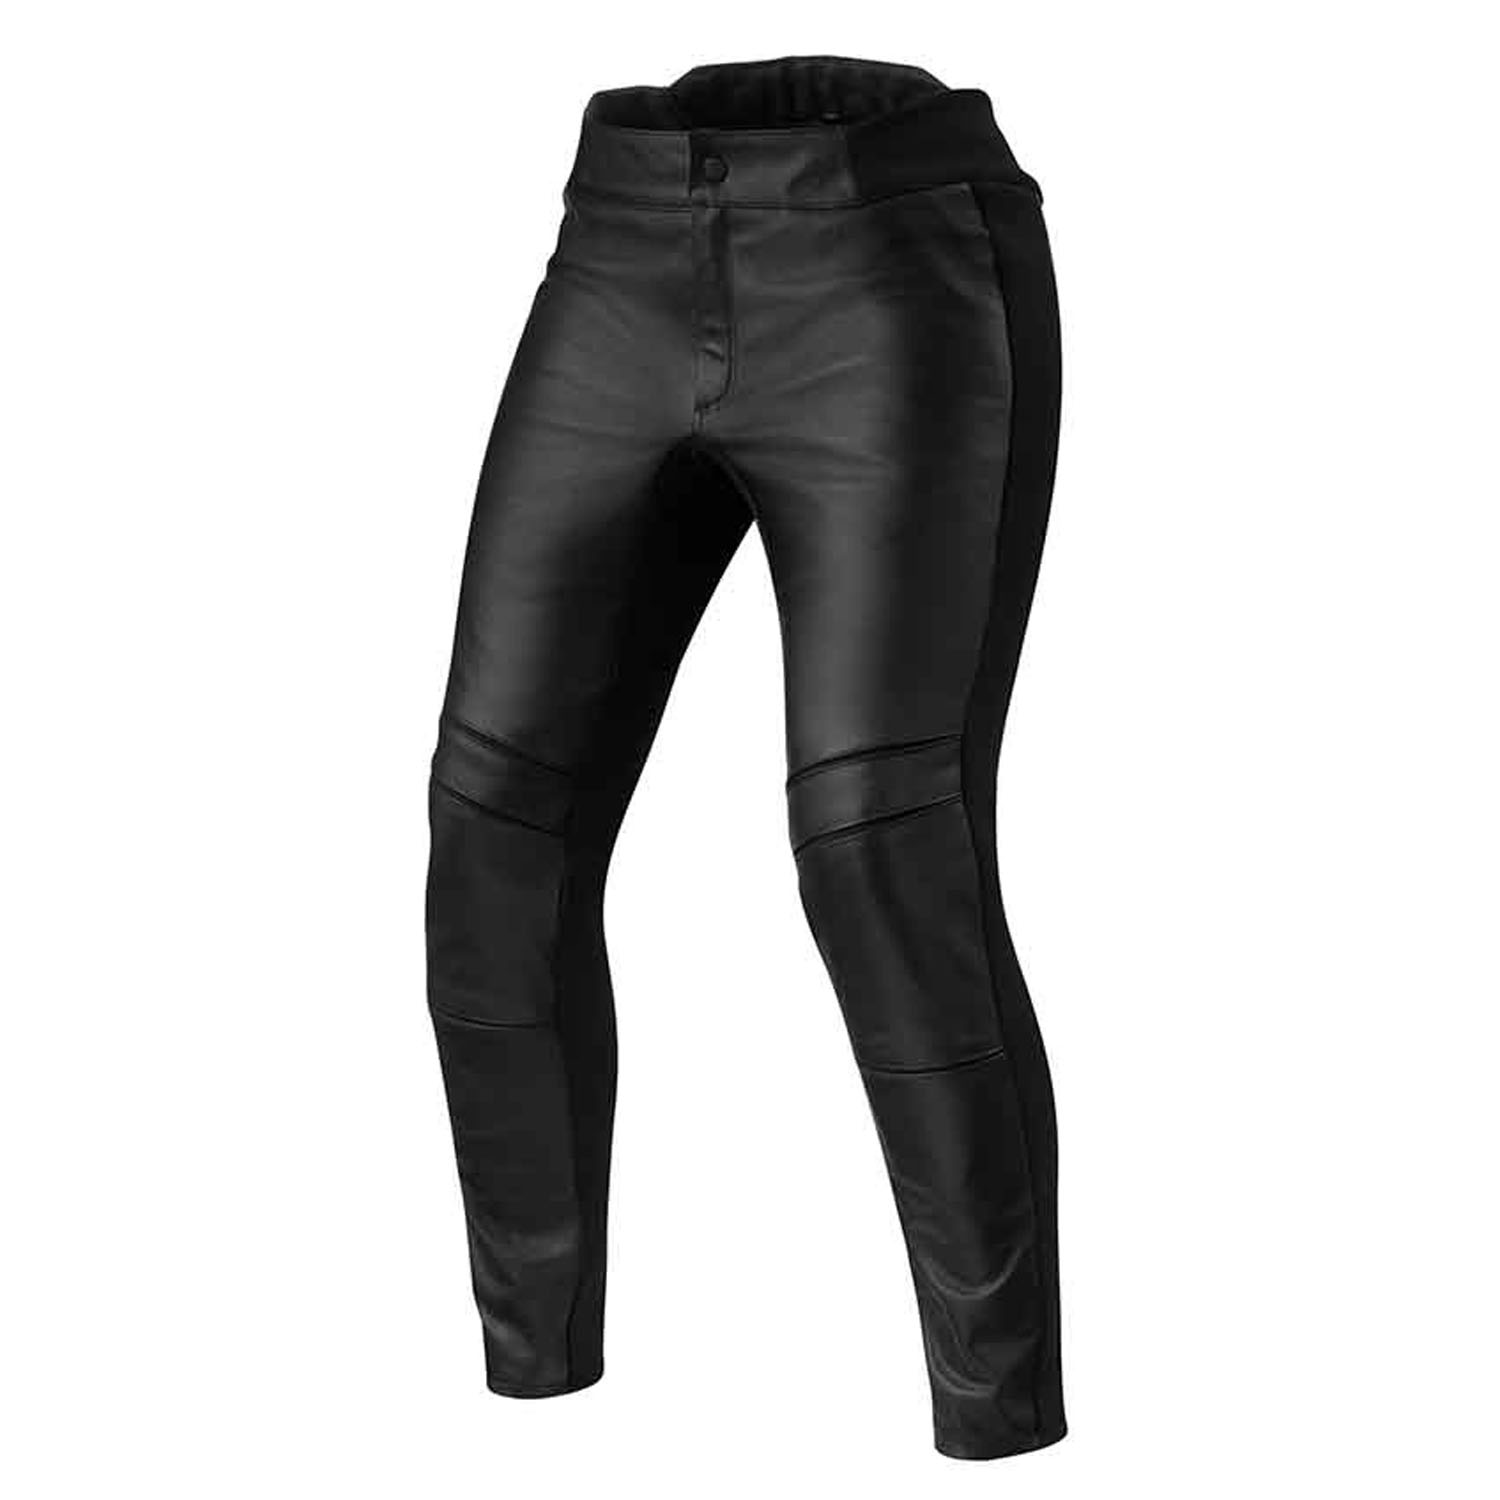 Image of REV'IT! Maci Ladies Black Long Motorcycle Pants Size 42 EN